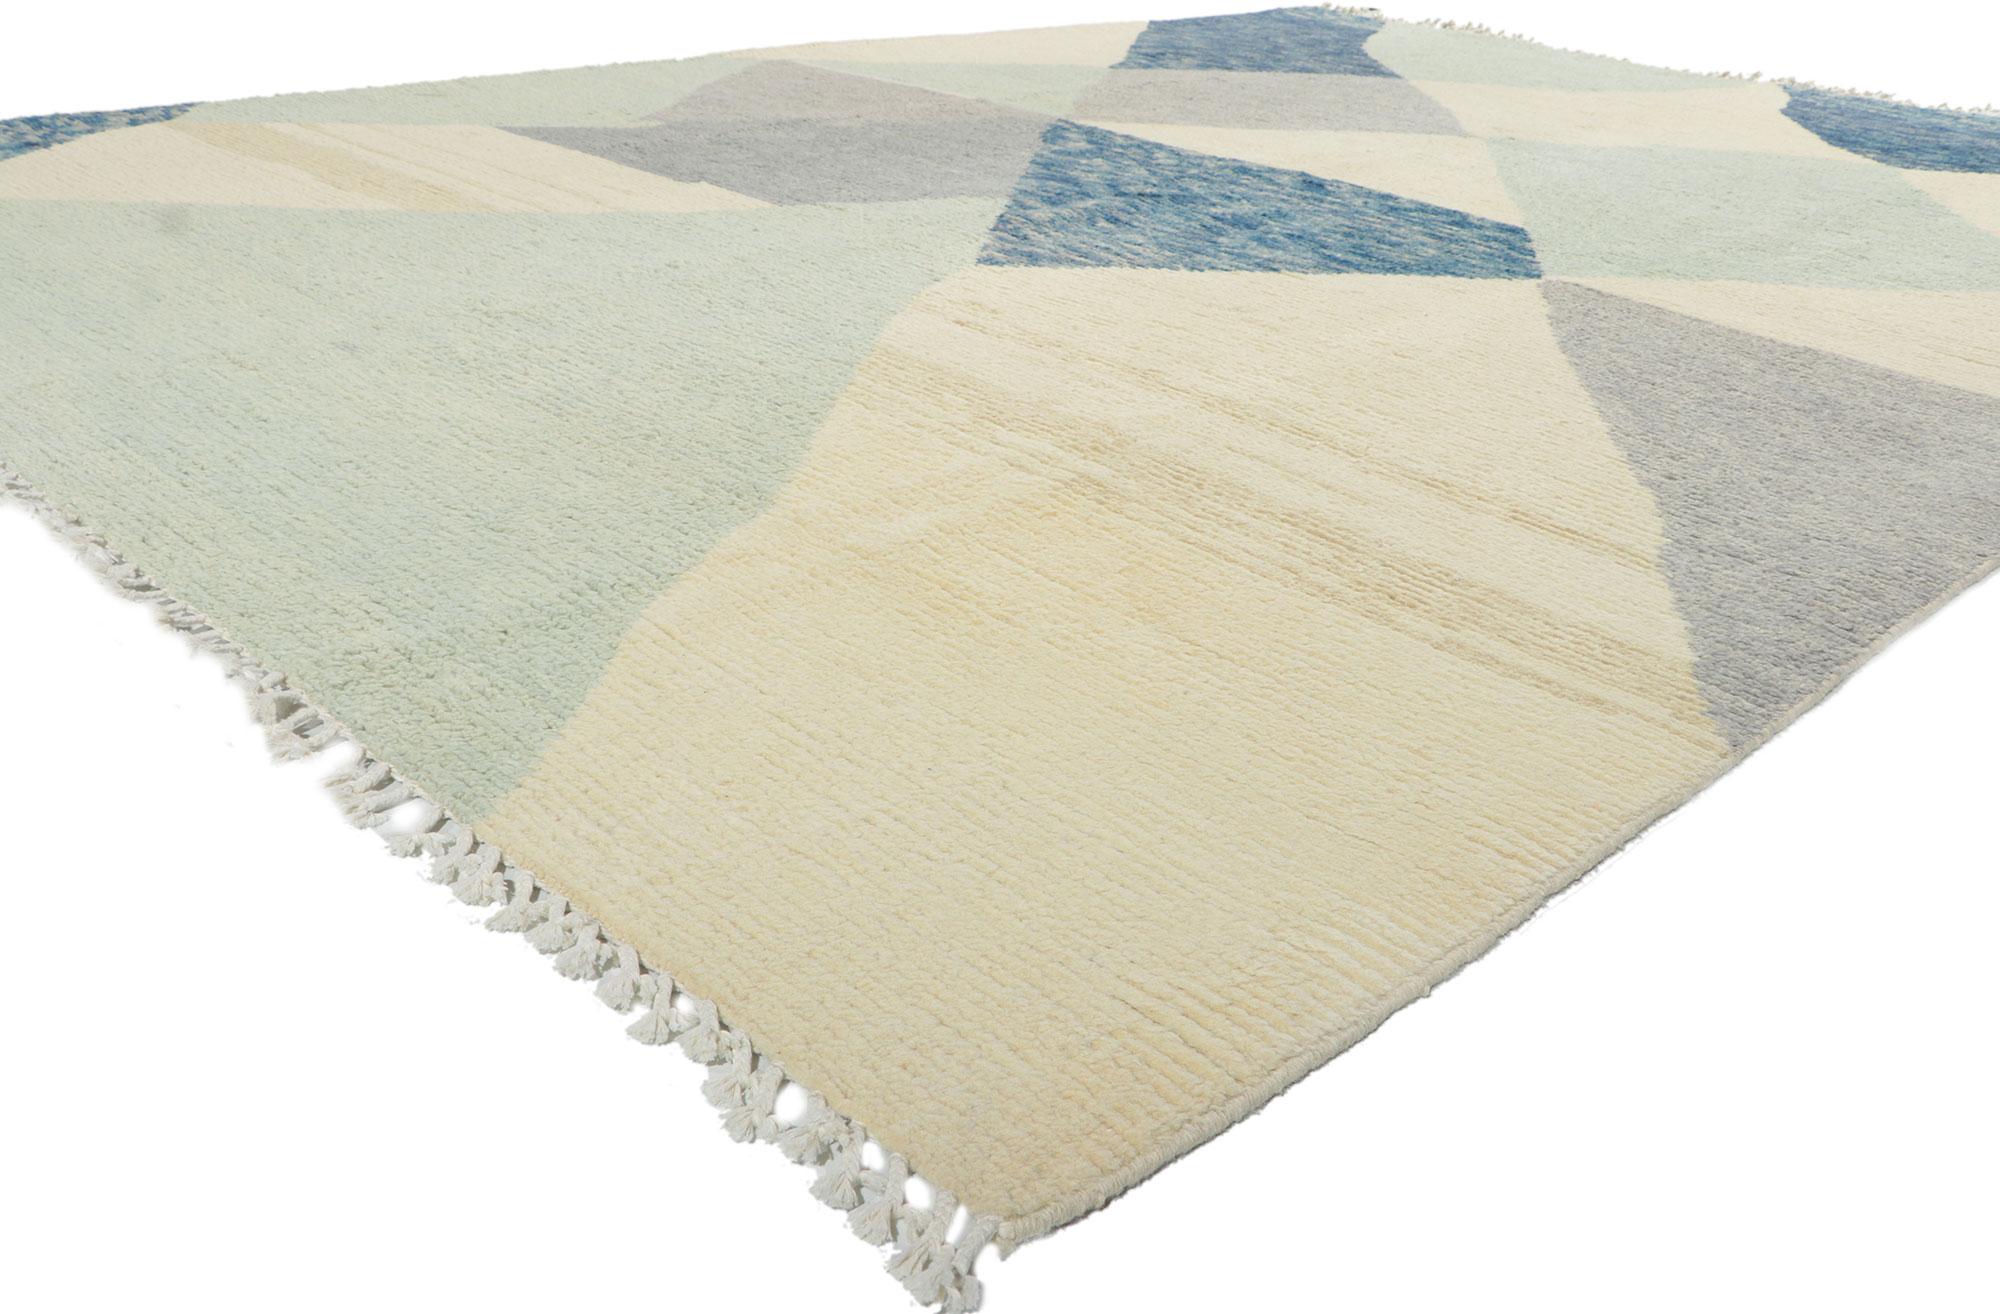 80635 New Abstract Moroccan Area Rug, 08'11 x 12'03.
Ce tapis marocain abstrait en laine nouée à la main est une vision captivante de la beauté du tissage. Il incarne un style moderne avec des détails et des textures incroyables. Le design graphique